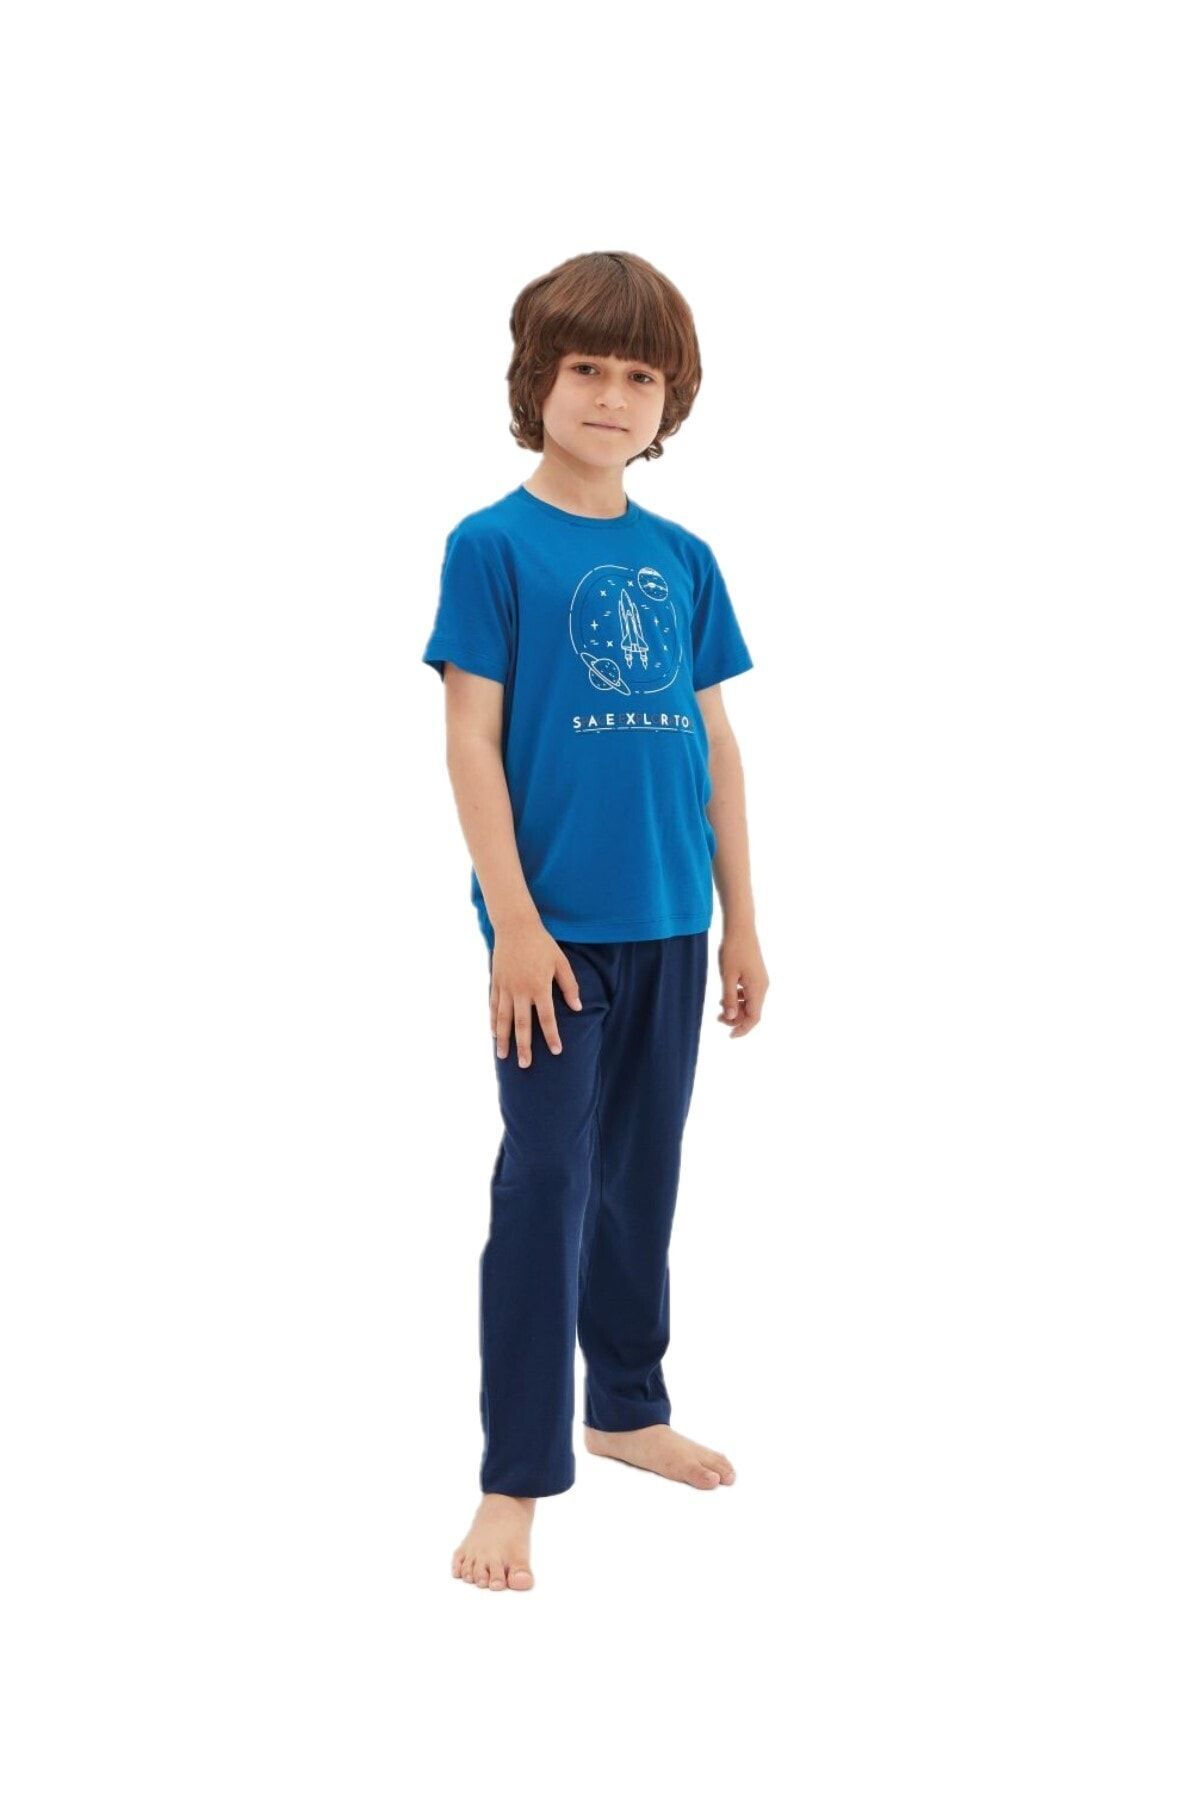 Blackspade Erkek Çocuk Pijama Takımı 30478-mavi